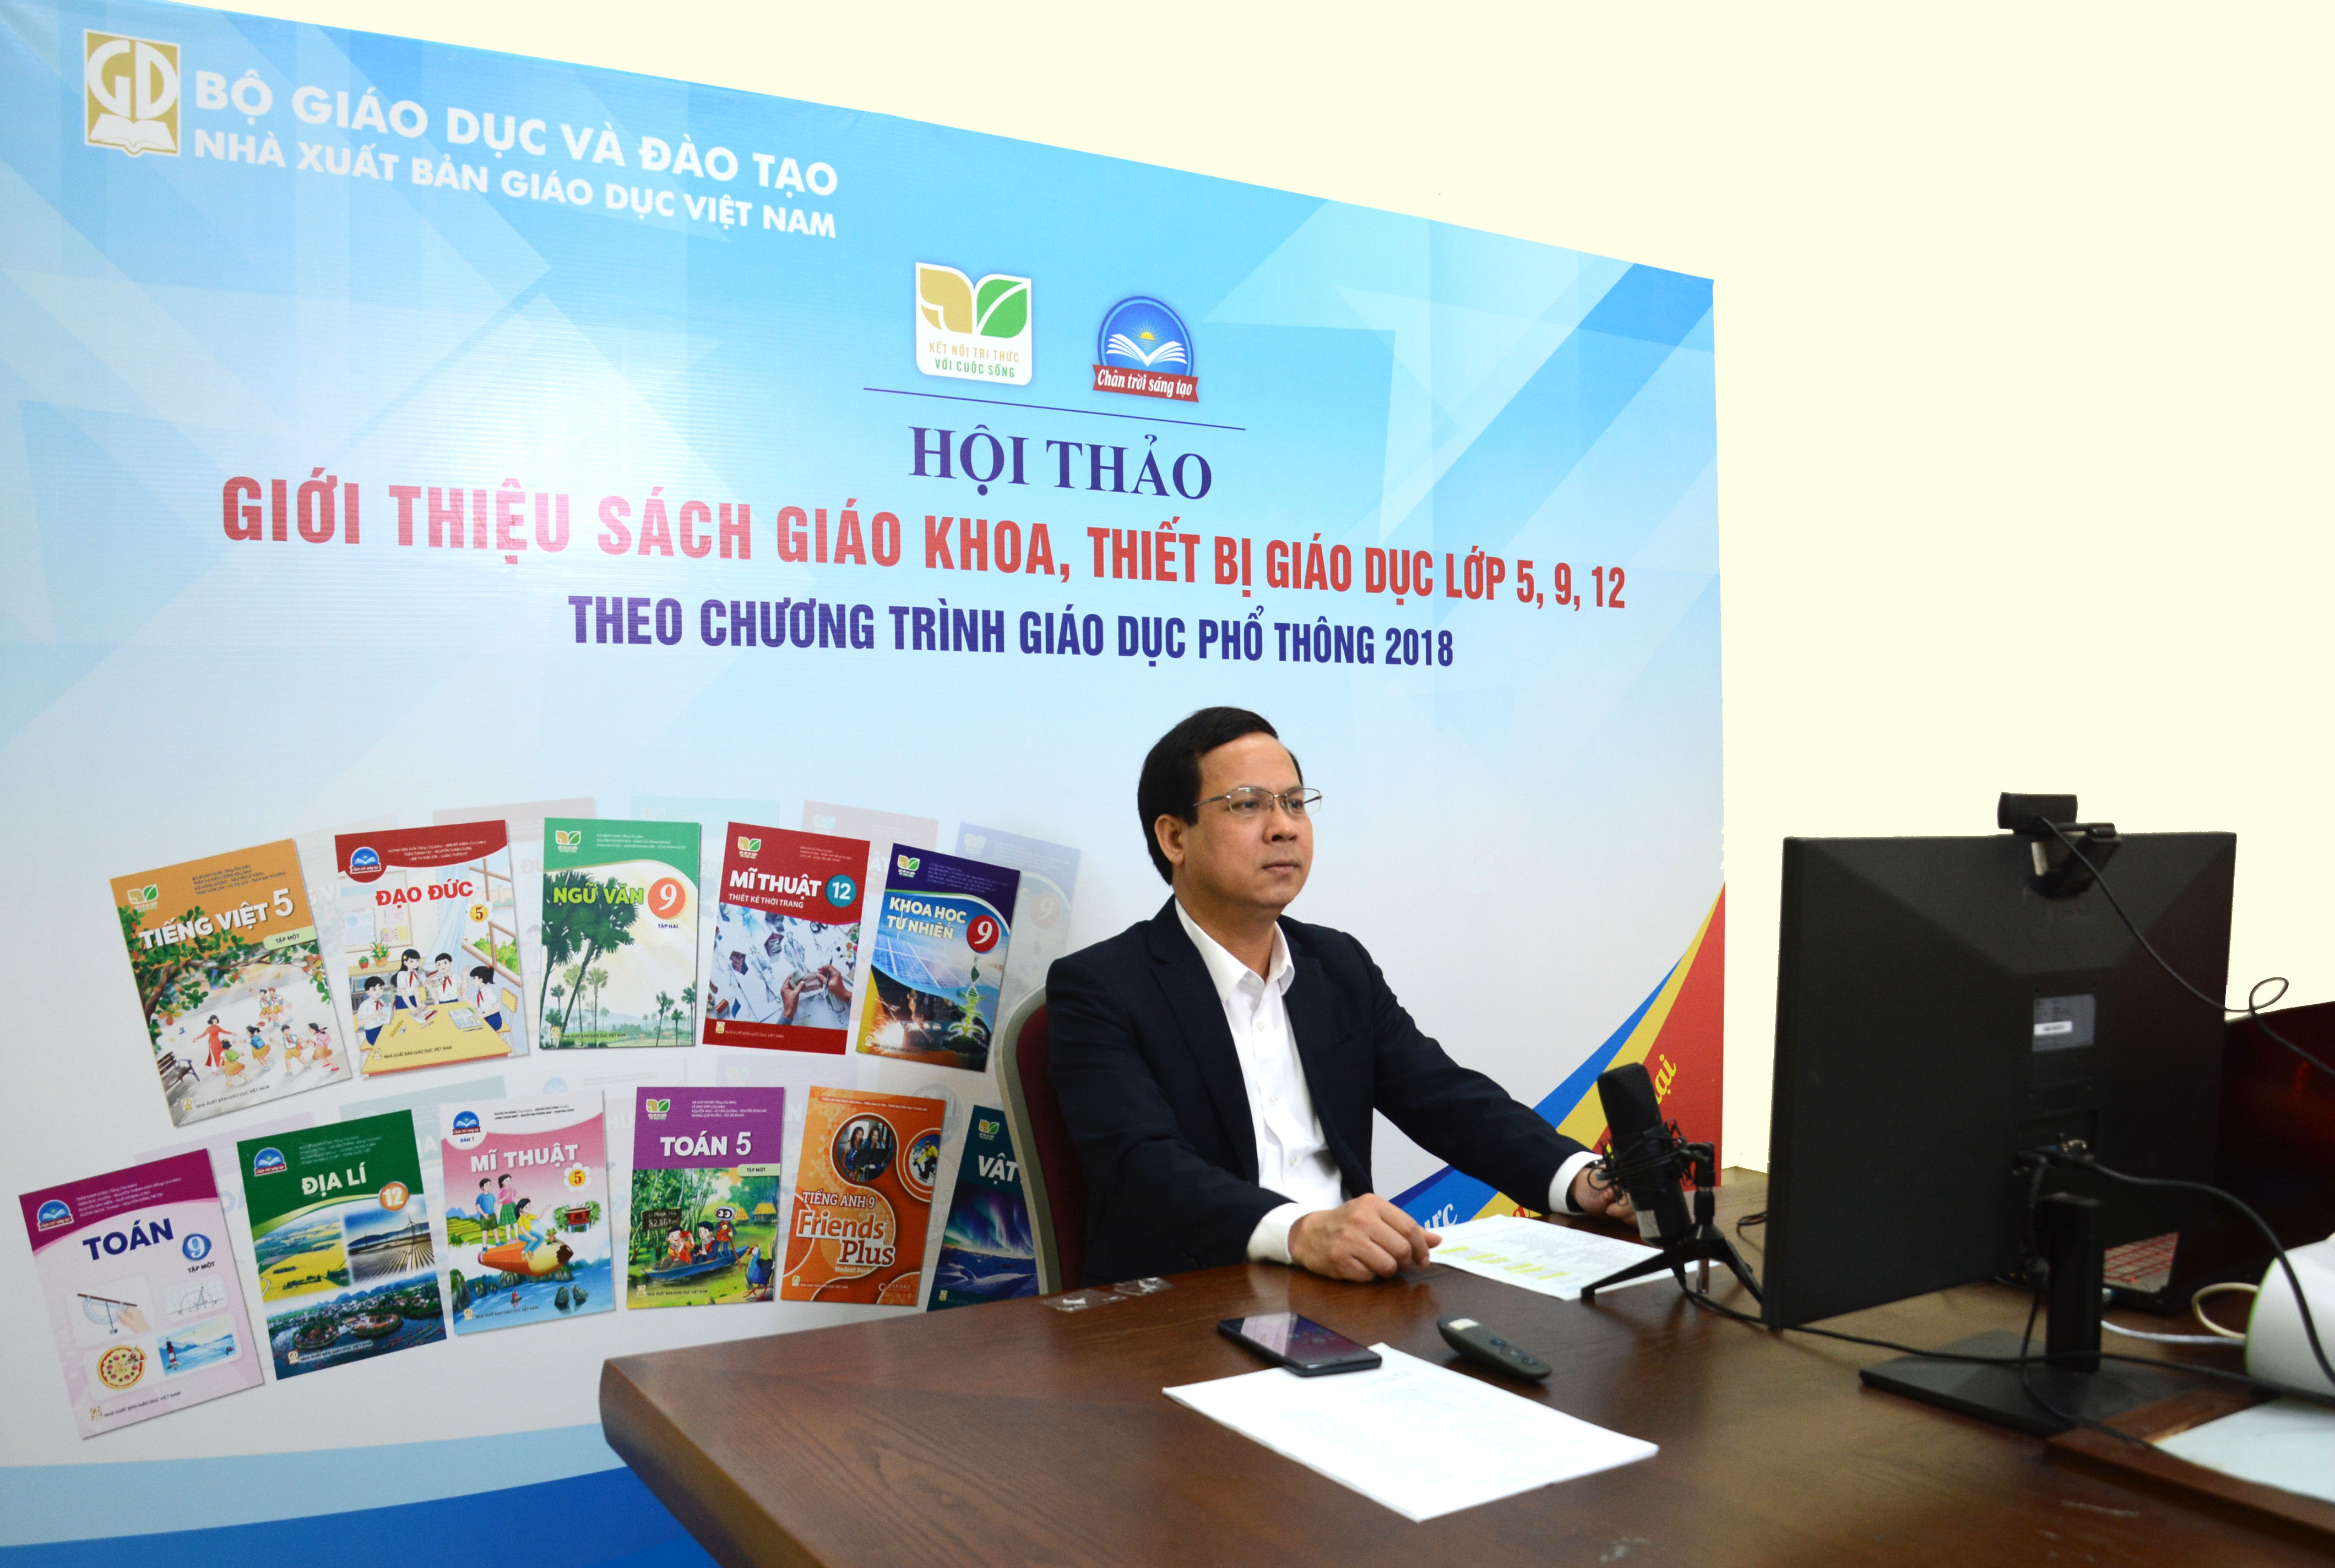 Nhà xuất bản Giáo dục Việt Nam triển khai giới thiệu SGK mới các lớp 5, 9, 12 trên toàn quốc